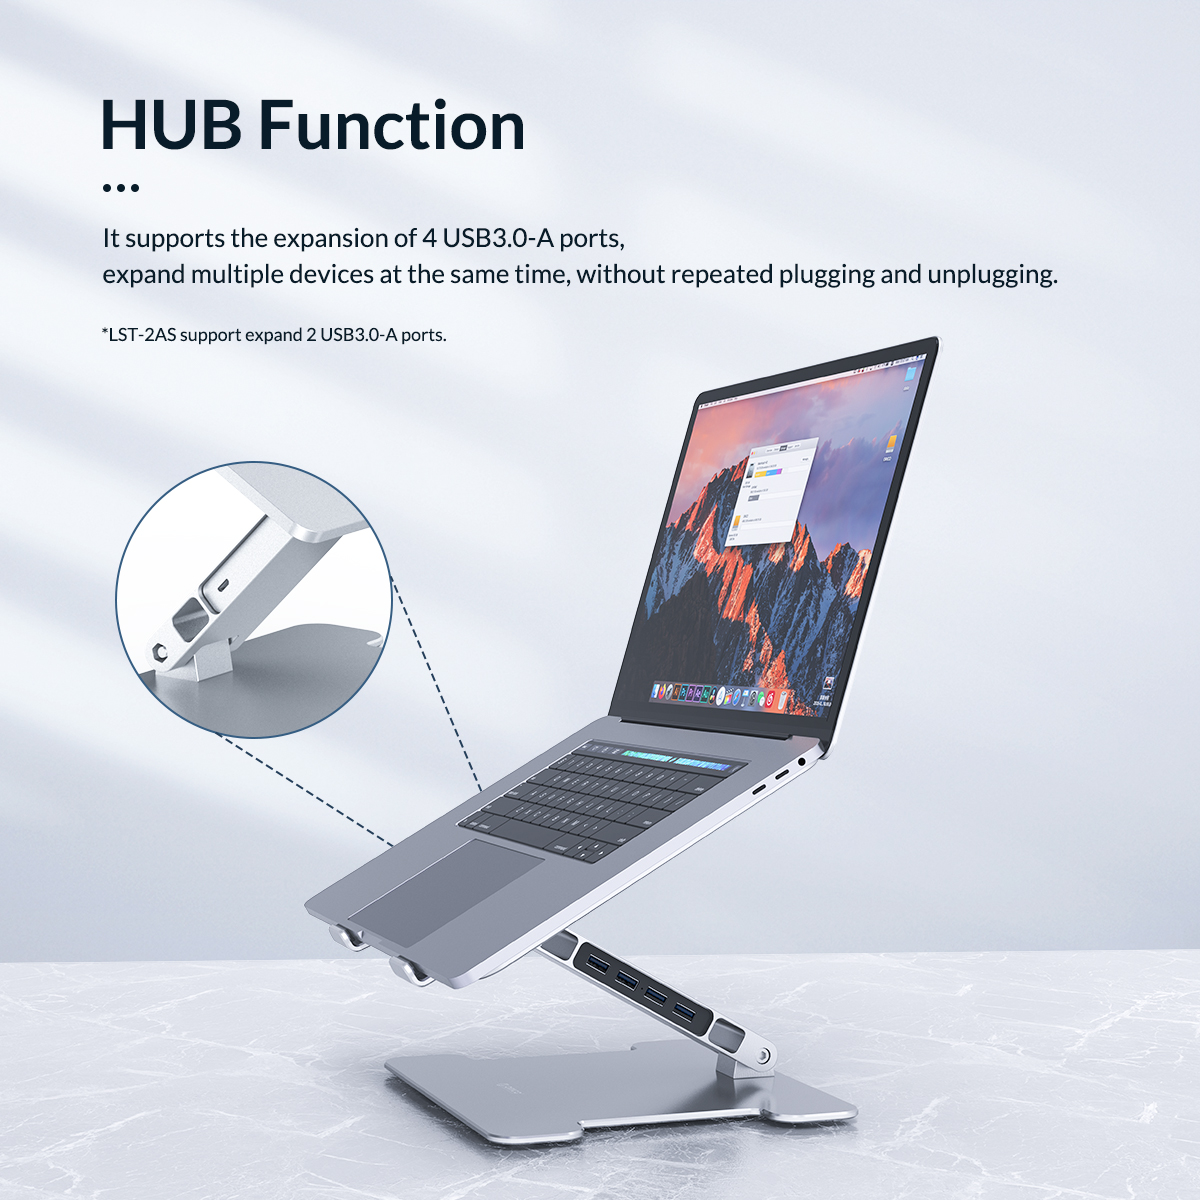 یک استند لپ تاپ که به عنوان هاب USB عمل می کند